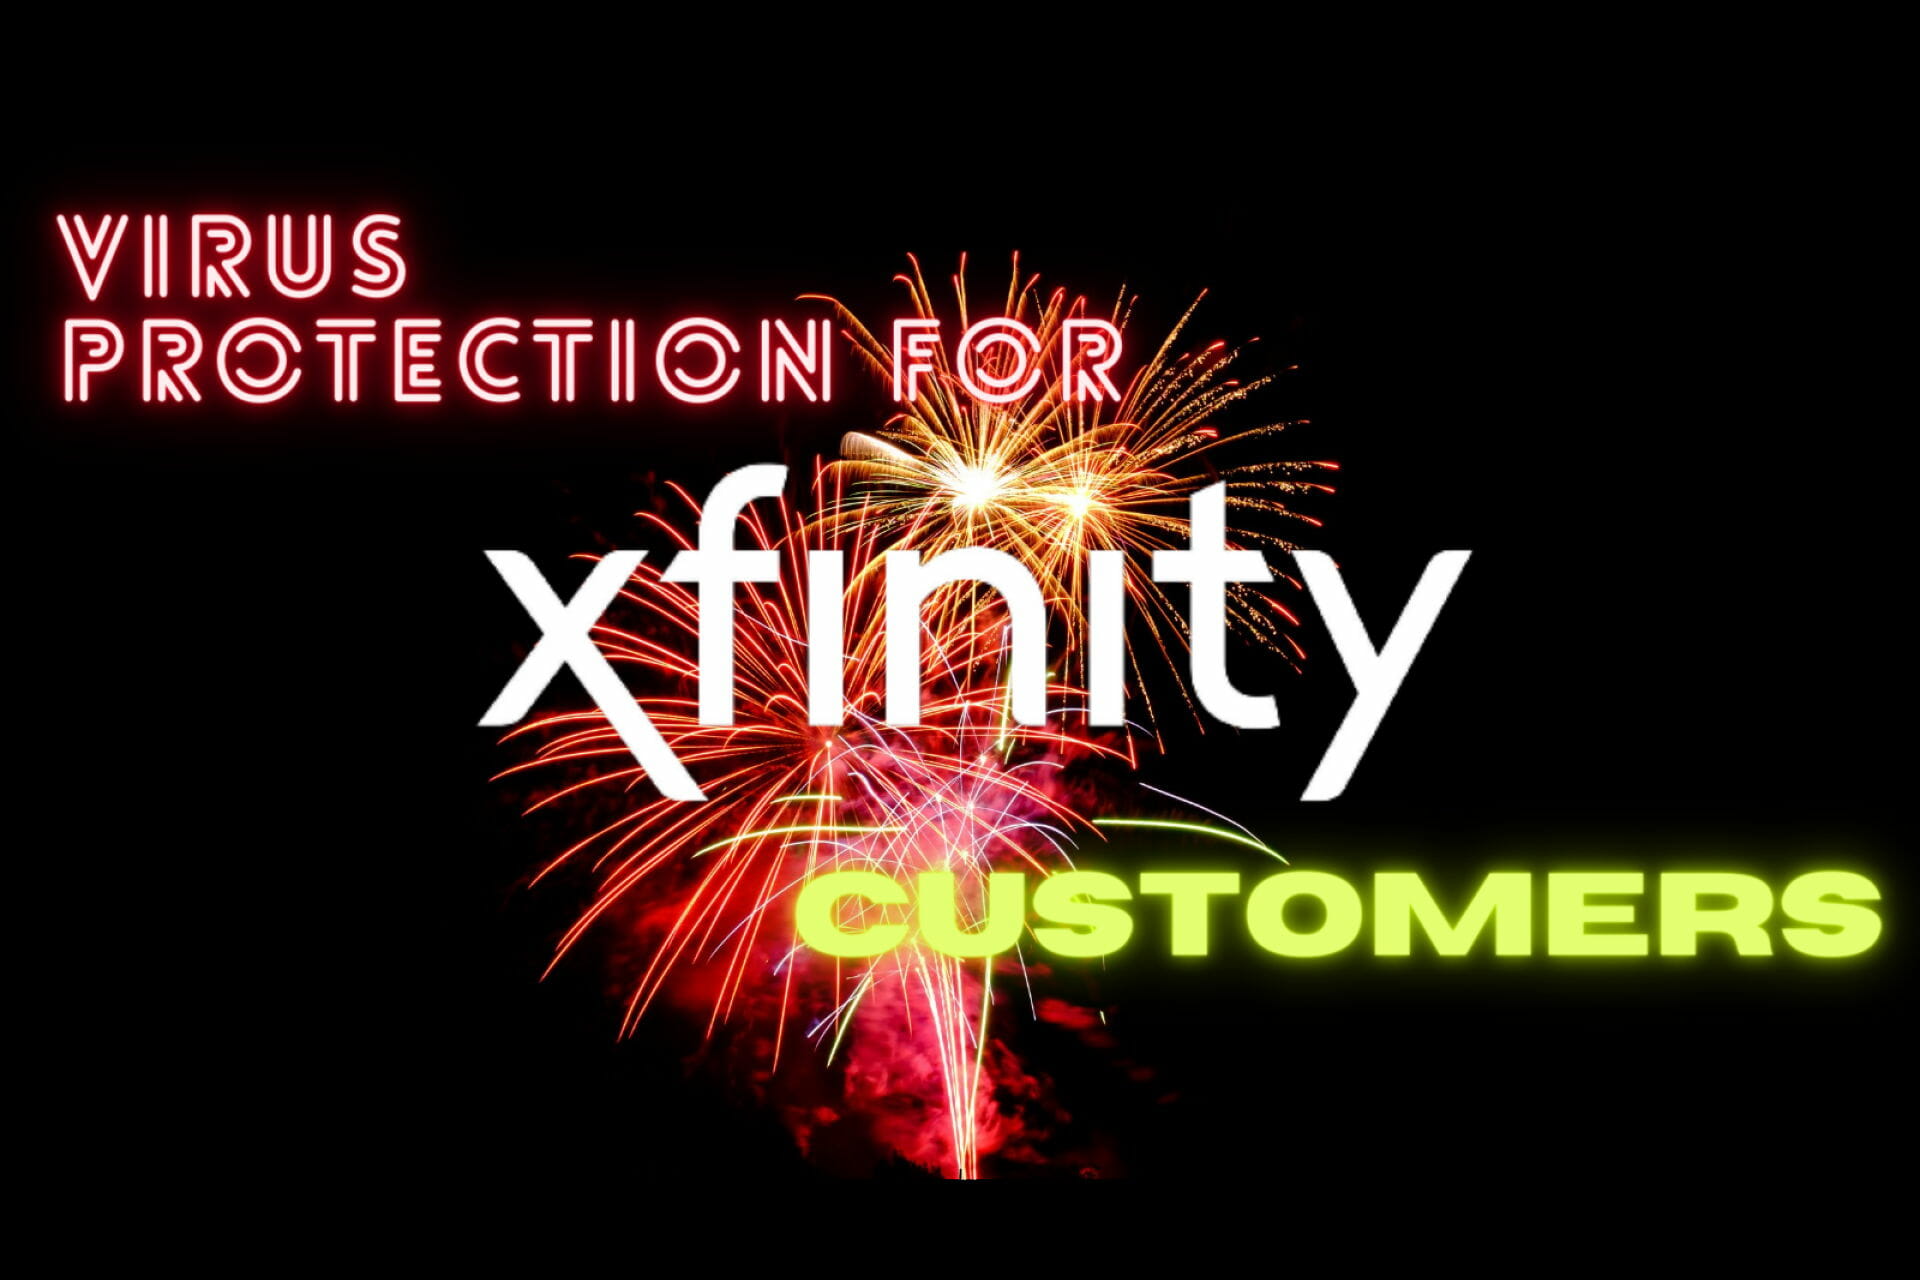 Får du gratis virusbeskyttelse med Xfinity?